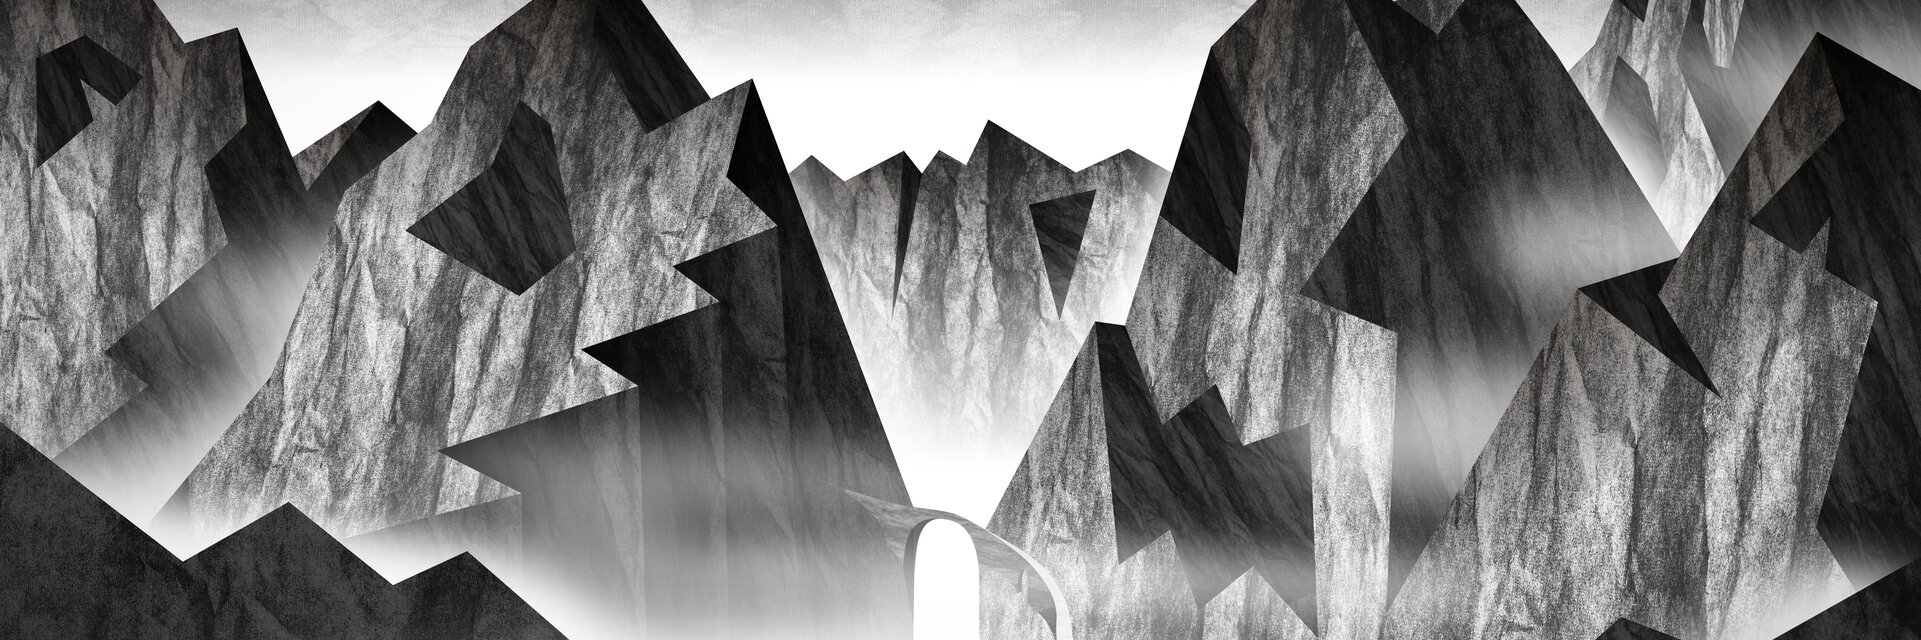 Keyvisual de l'exposition "Espace alpin légendaire" paysage de montagne gris avec des visages fantomatiques